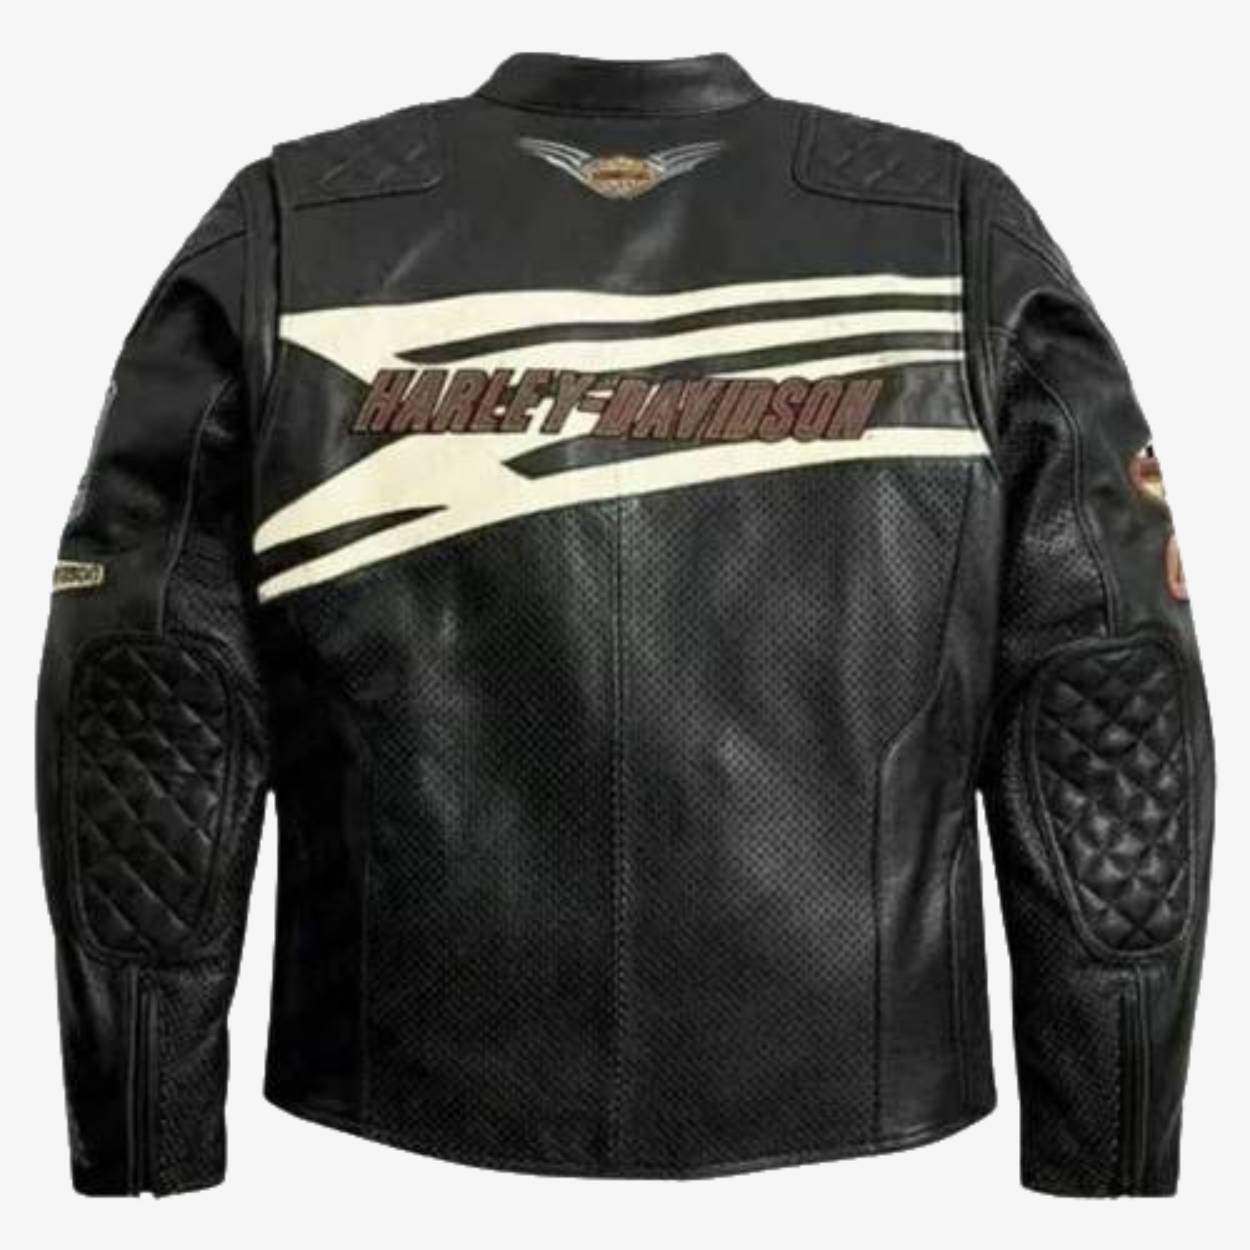 Harley Davidson Sprocket Racing Perforated Biker Leather Jacket